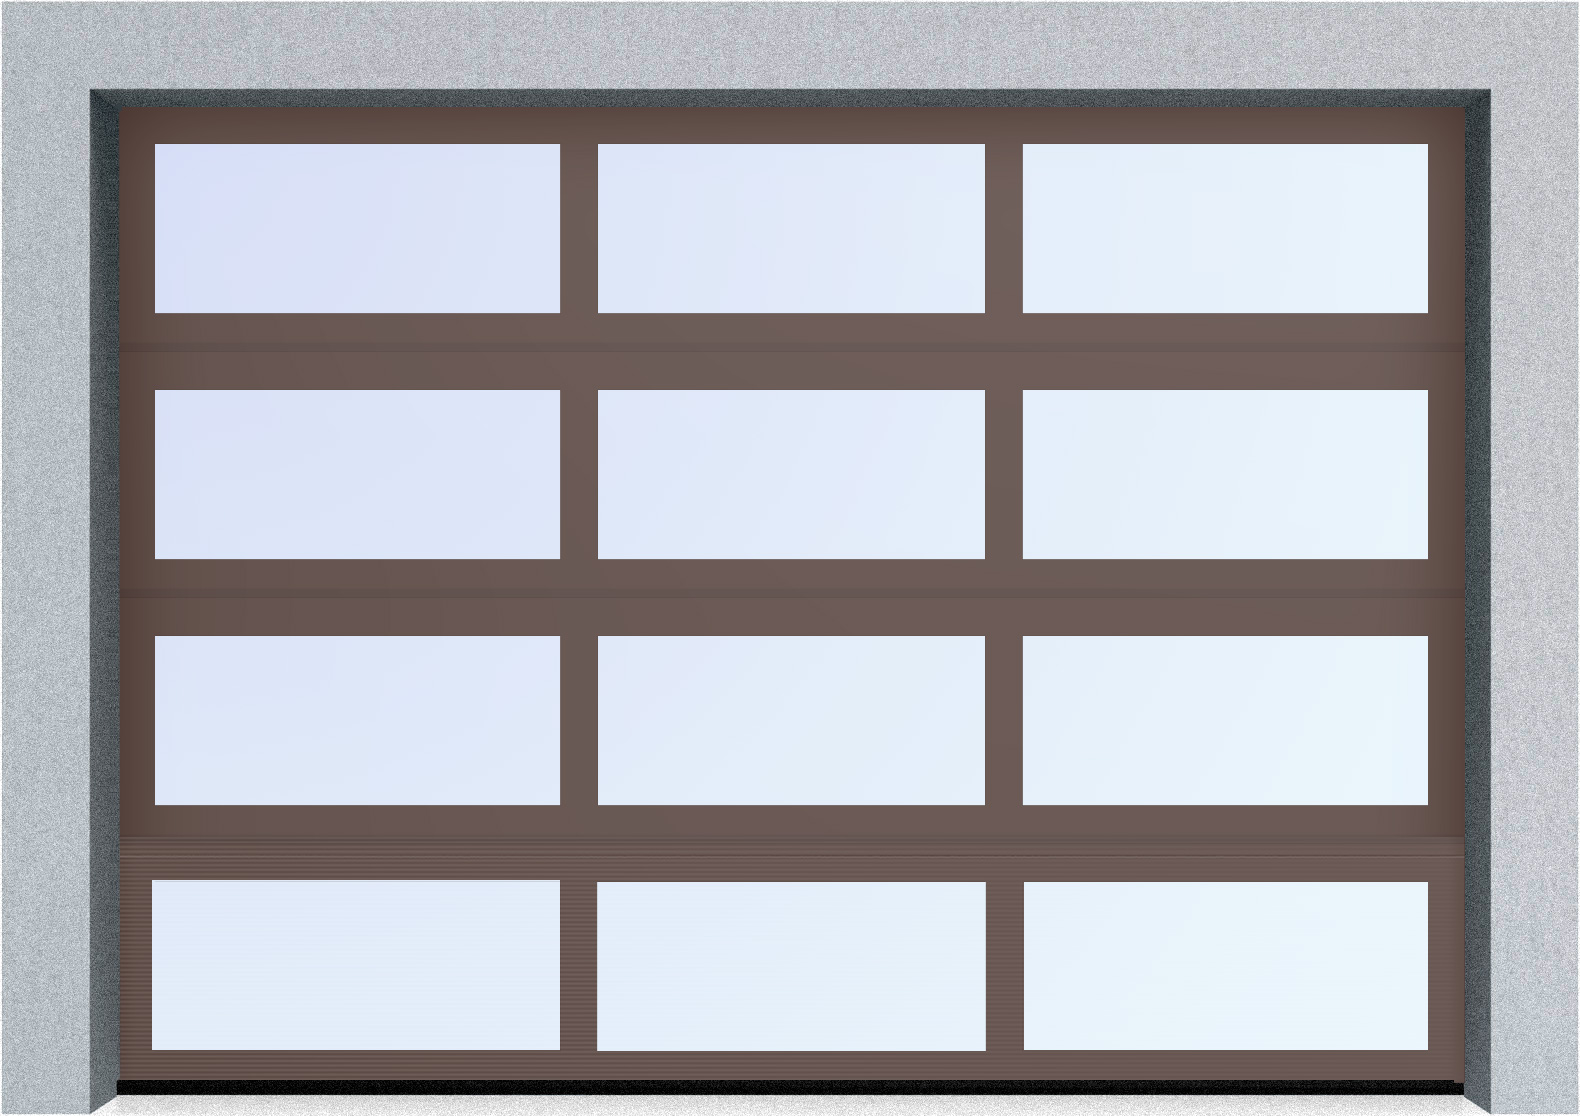  Секционные панорамные ворота серии AluTrend (АЛП) 5250х4500 нижняя панель стандартные цвета, фото 7 